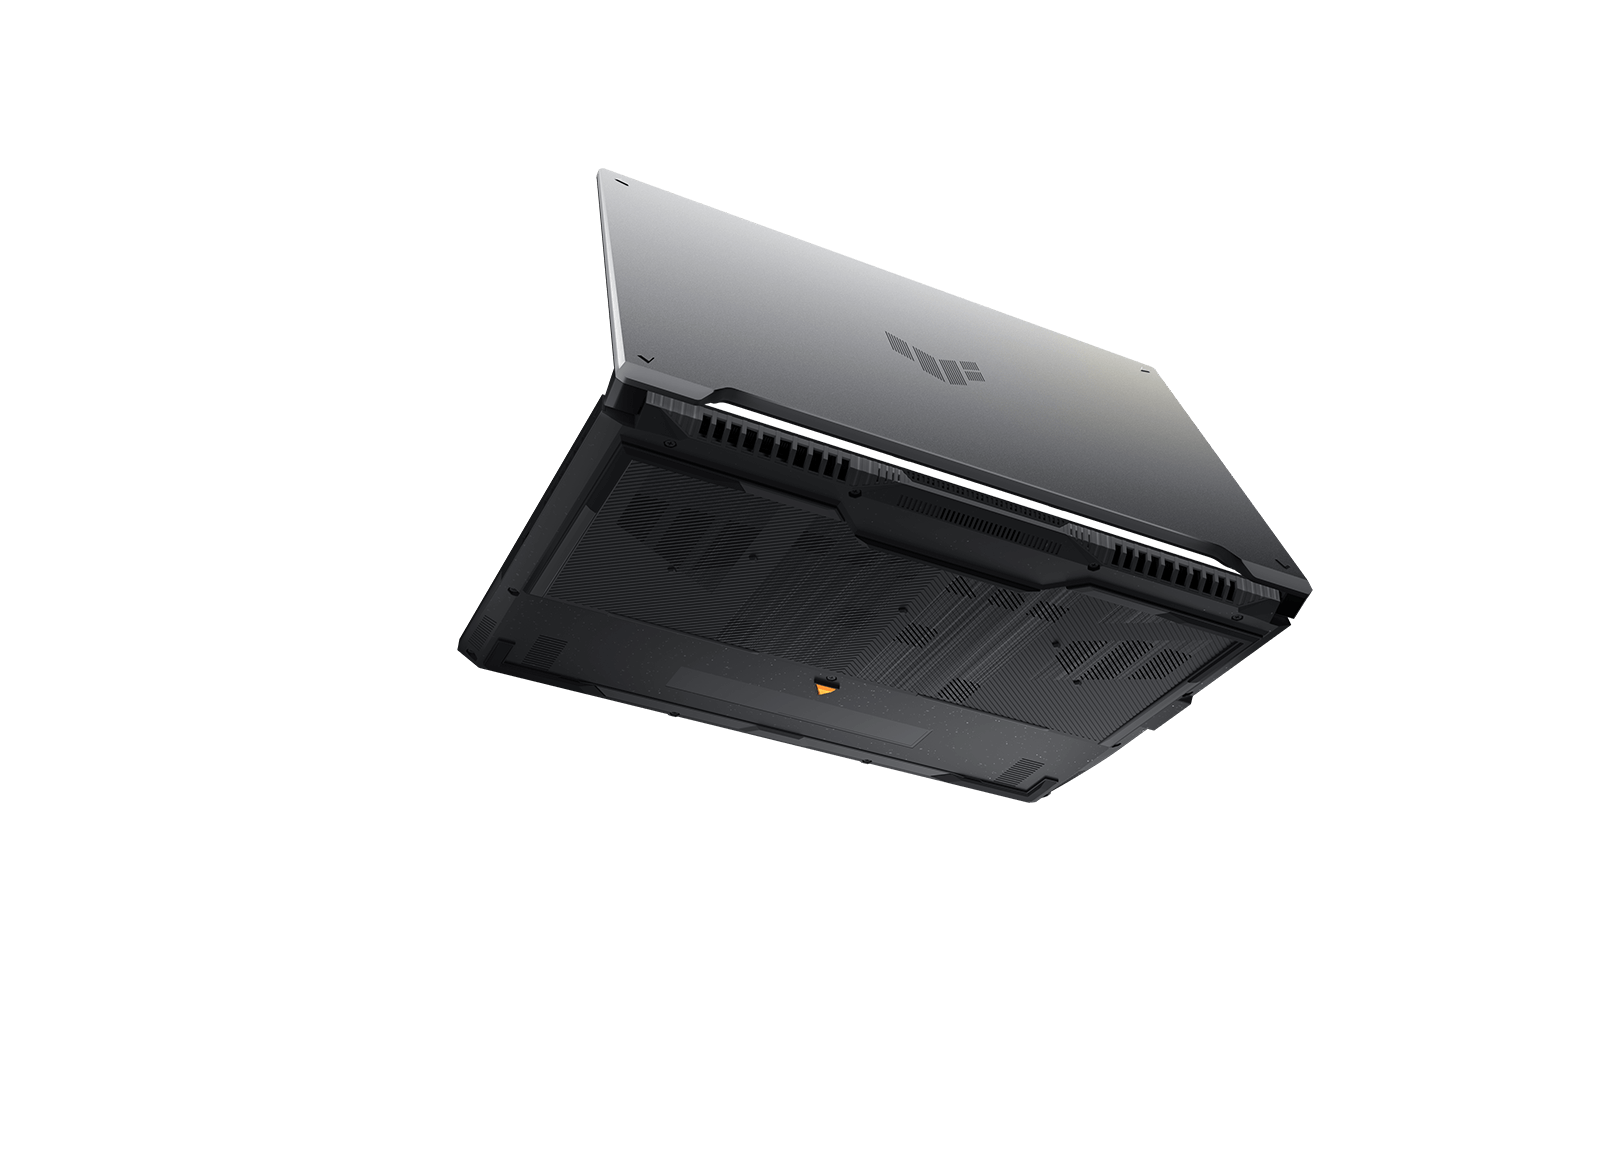 Ноутбук TUF Gaming F16 с полуоткрытой крышкой парит на черном фоне. Видны вентиляционные отверстия в его нижней панели. 